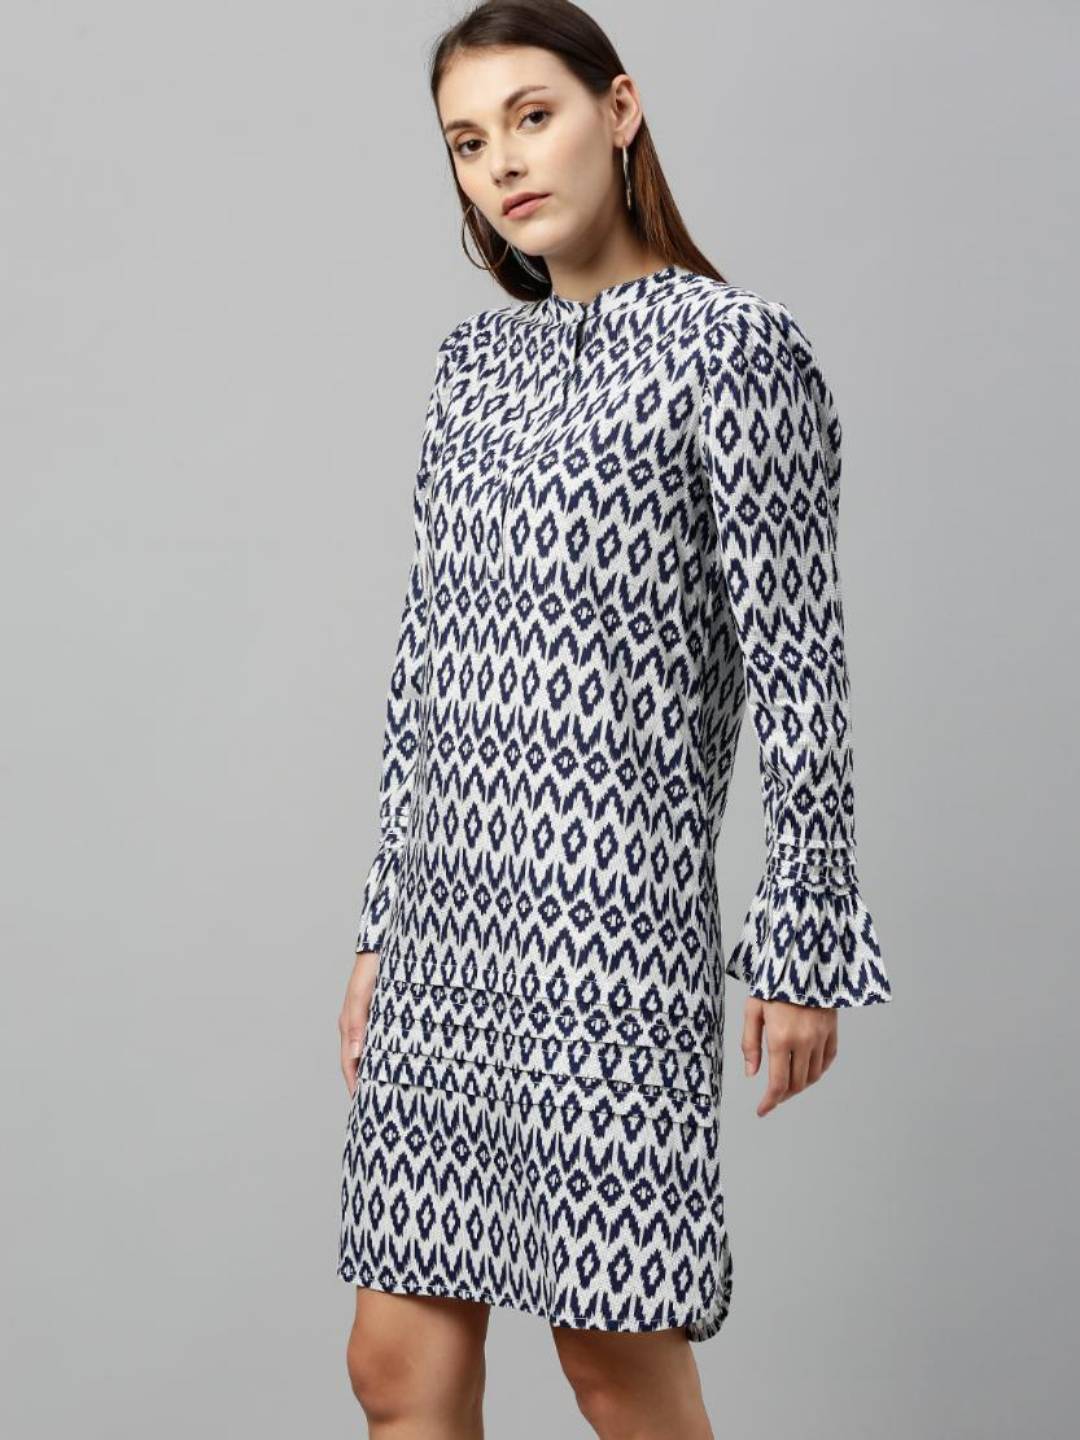 Blue & White printed Rayon dress